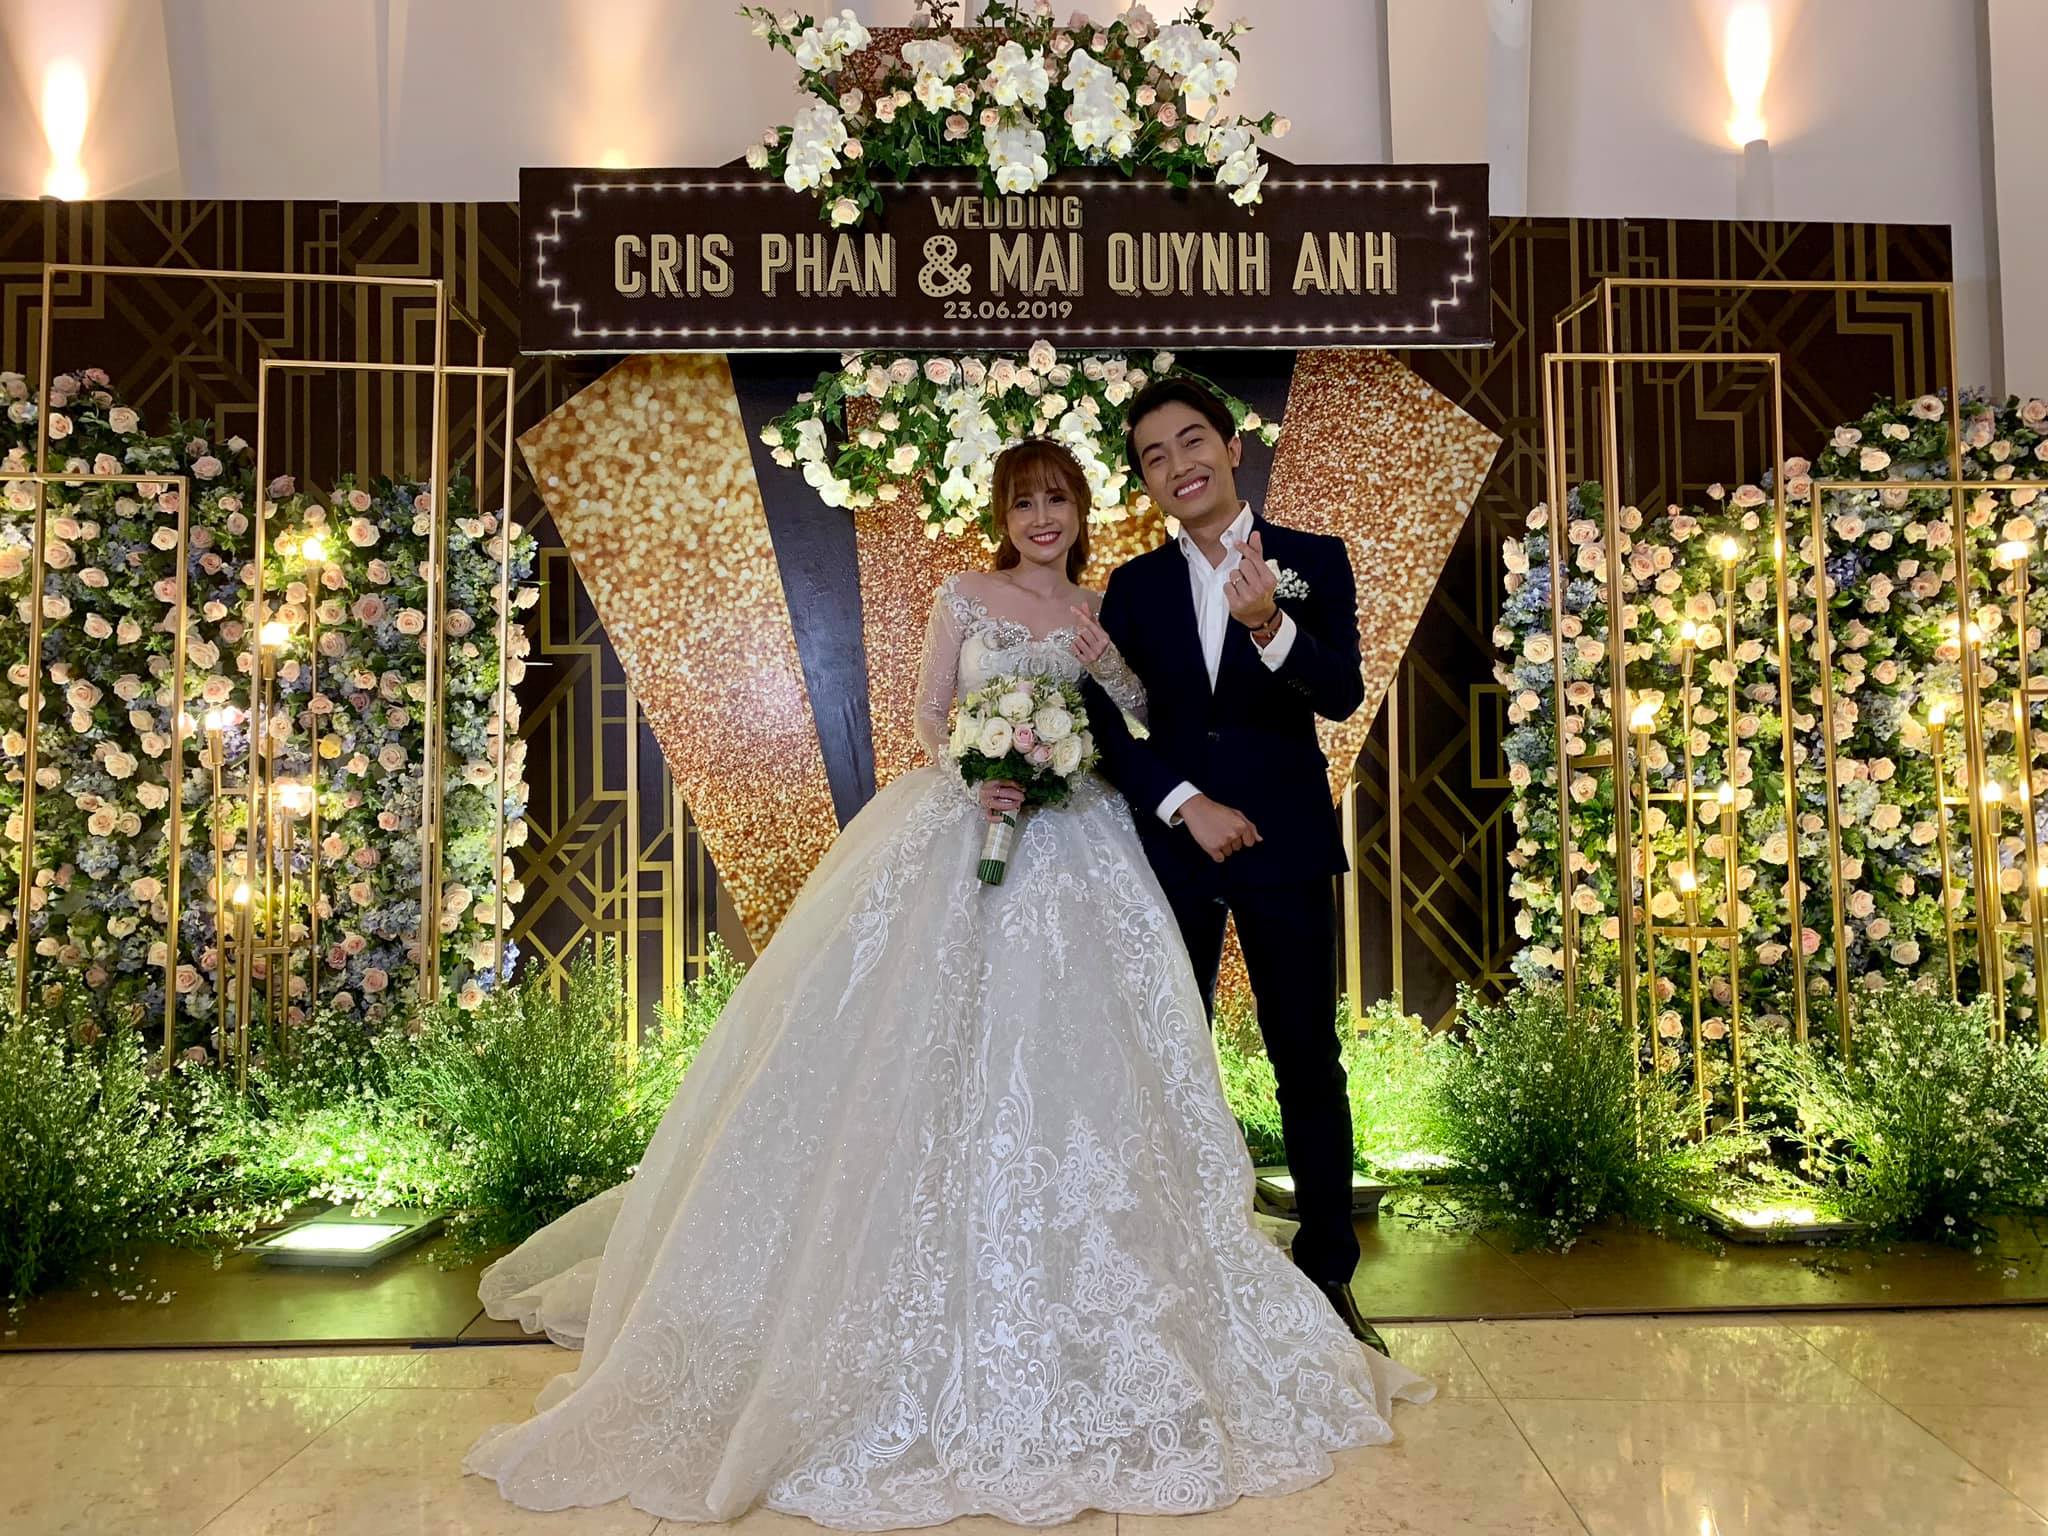 Vừa đám cưới, Cris Phan và Mai Quỳnh Anh đã vội tung ra bộ ảnh vừa nhắng nhít vừa lãng mạn khiến dân tình gato hết nấc